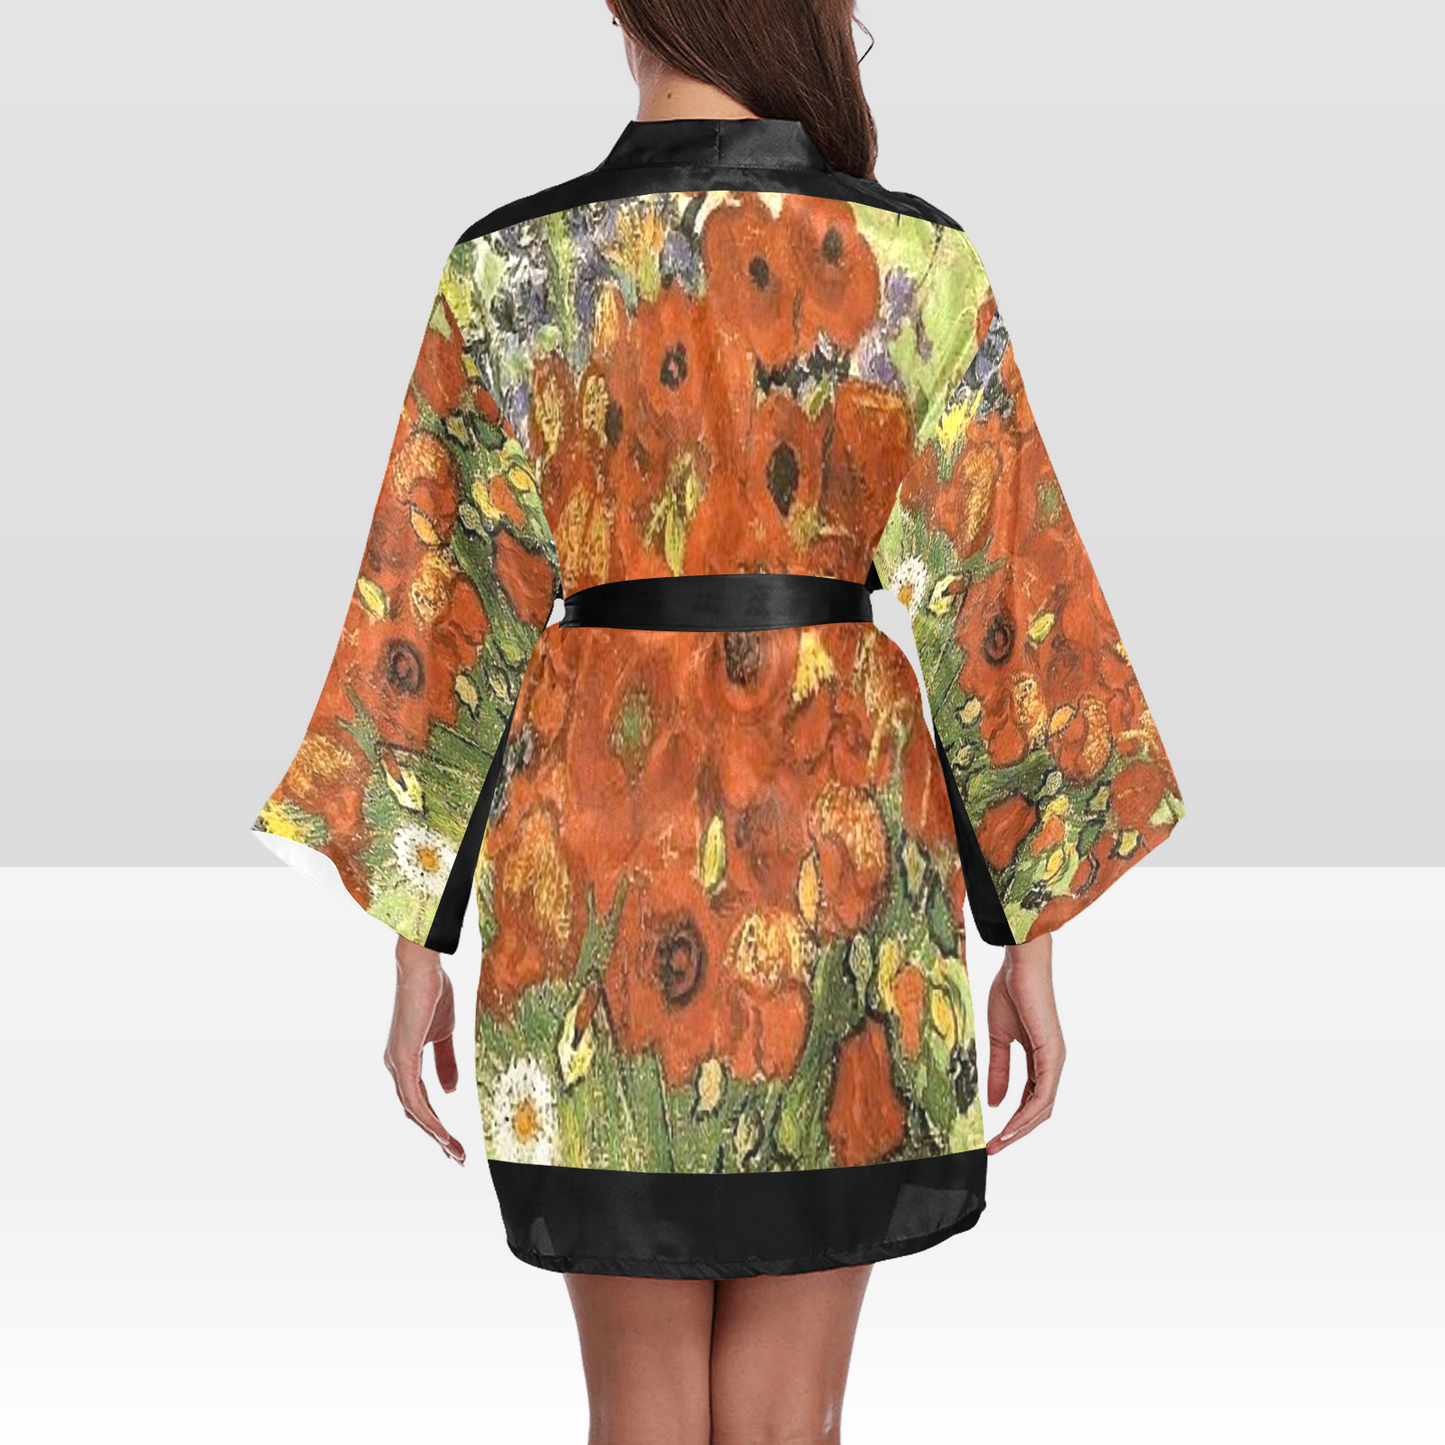 Vintage Floral Kimono Robe, Black or White Trim, Sizes XS to 2XL, Design 56